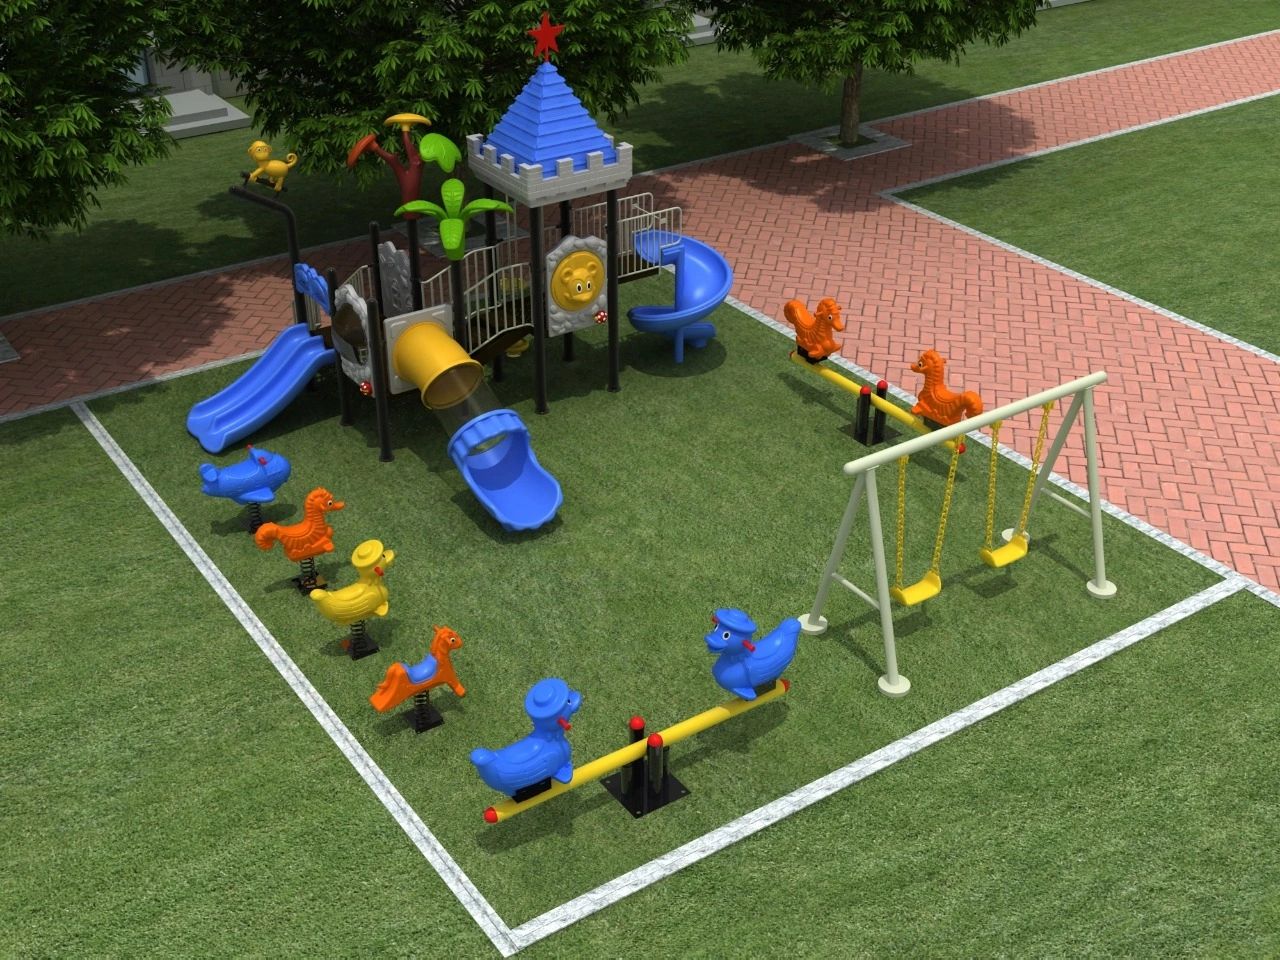 Diseño de parques infantiles: 4 aspectos esenciales para construir diversión